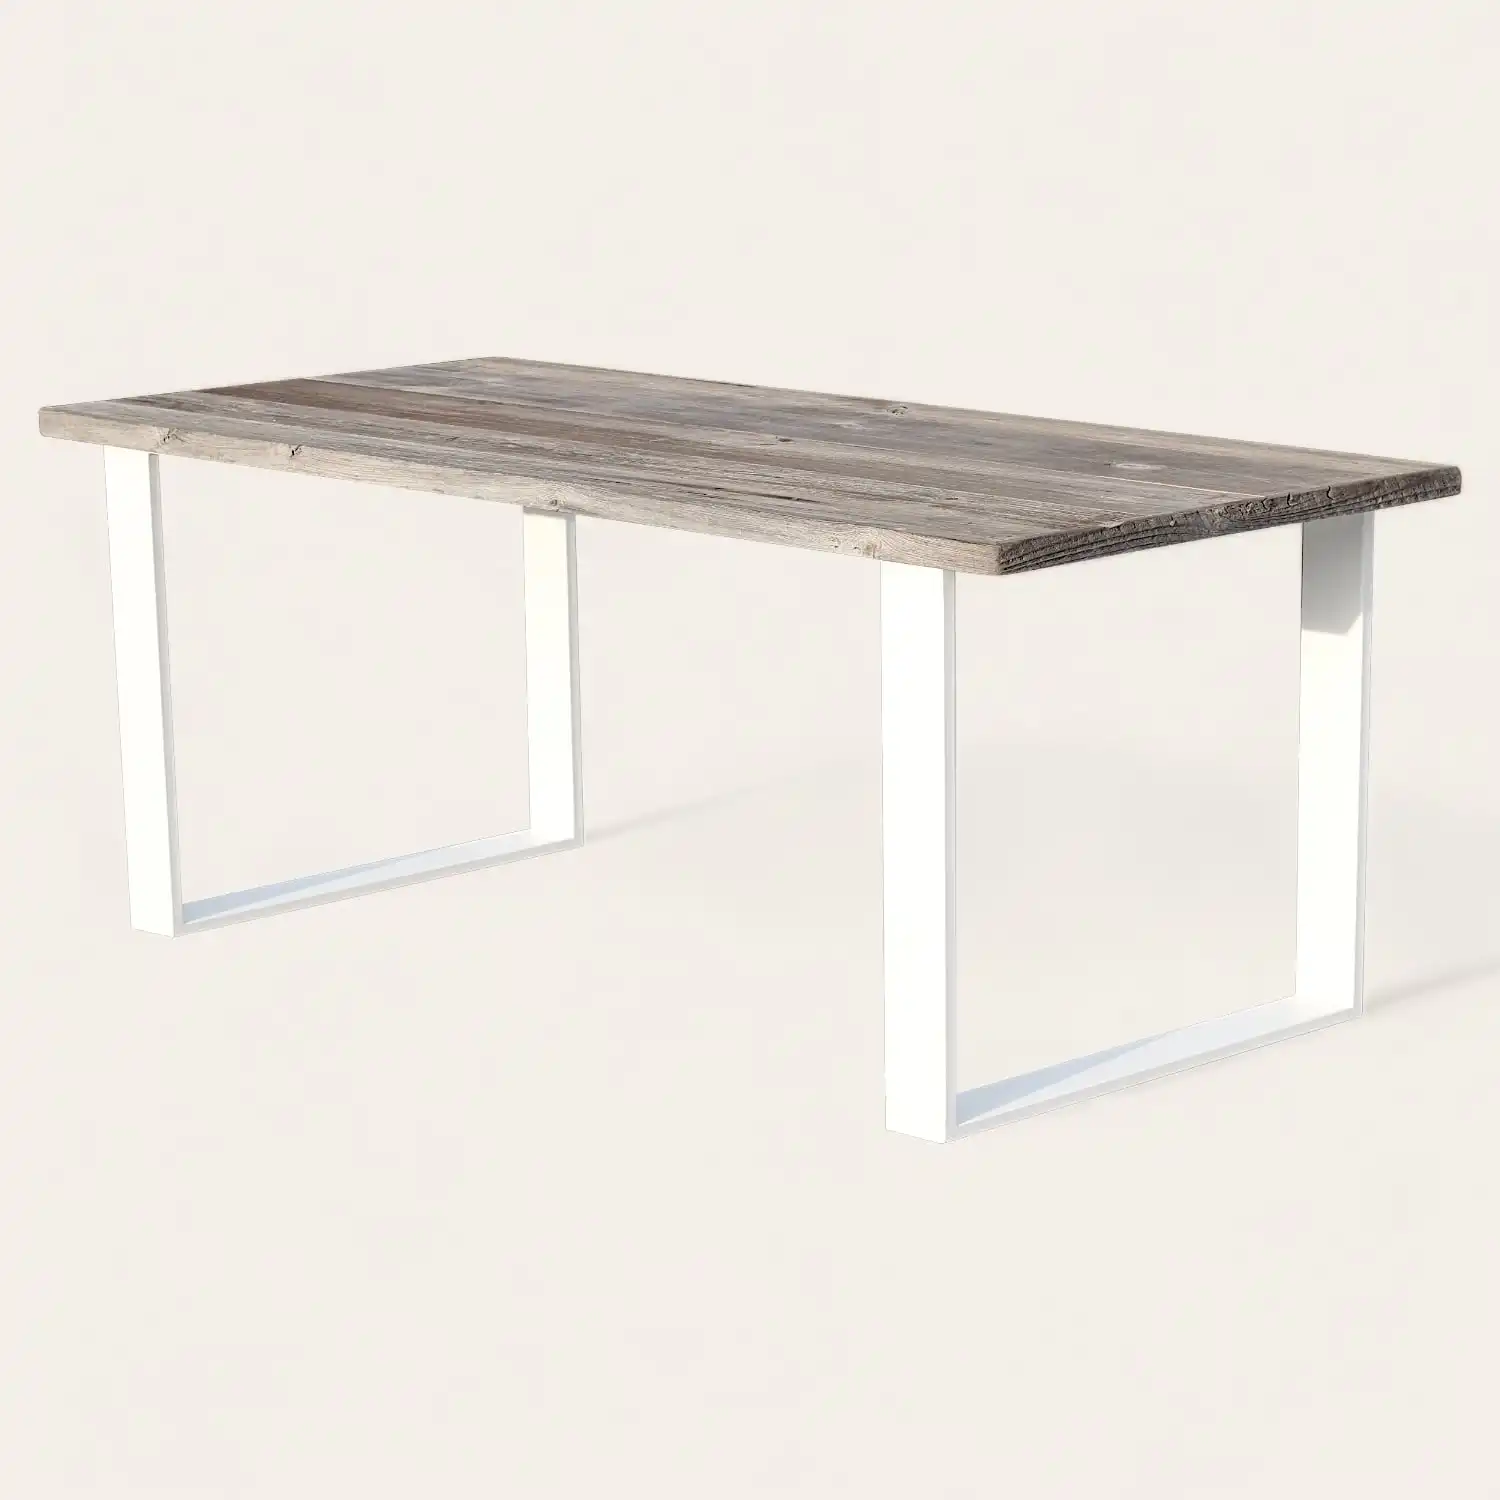  Une table à manger en bois rustique avec une base blanche. 